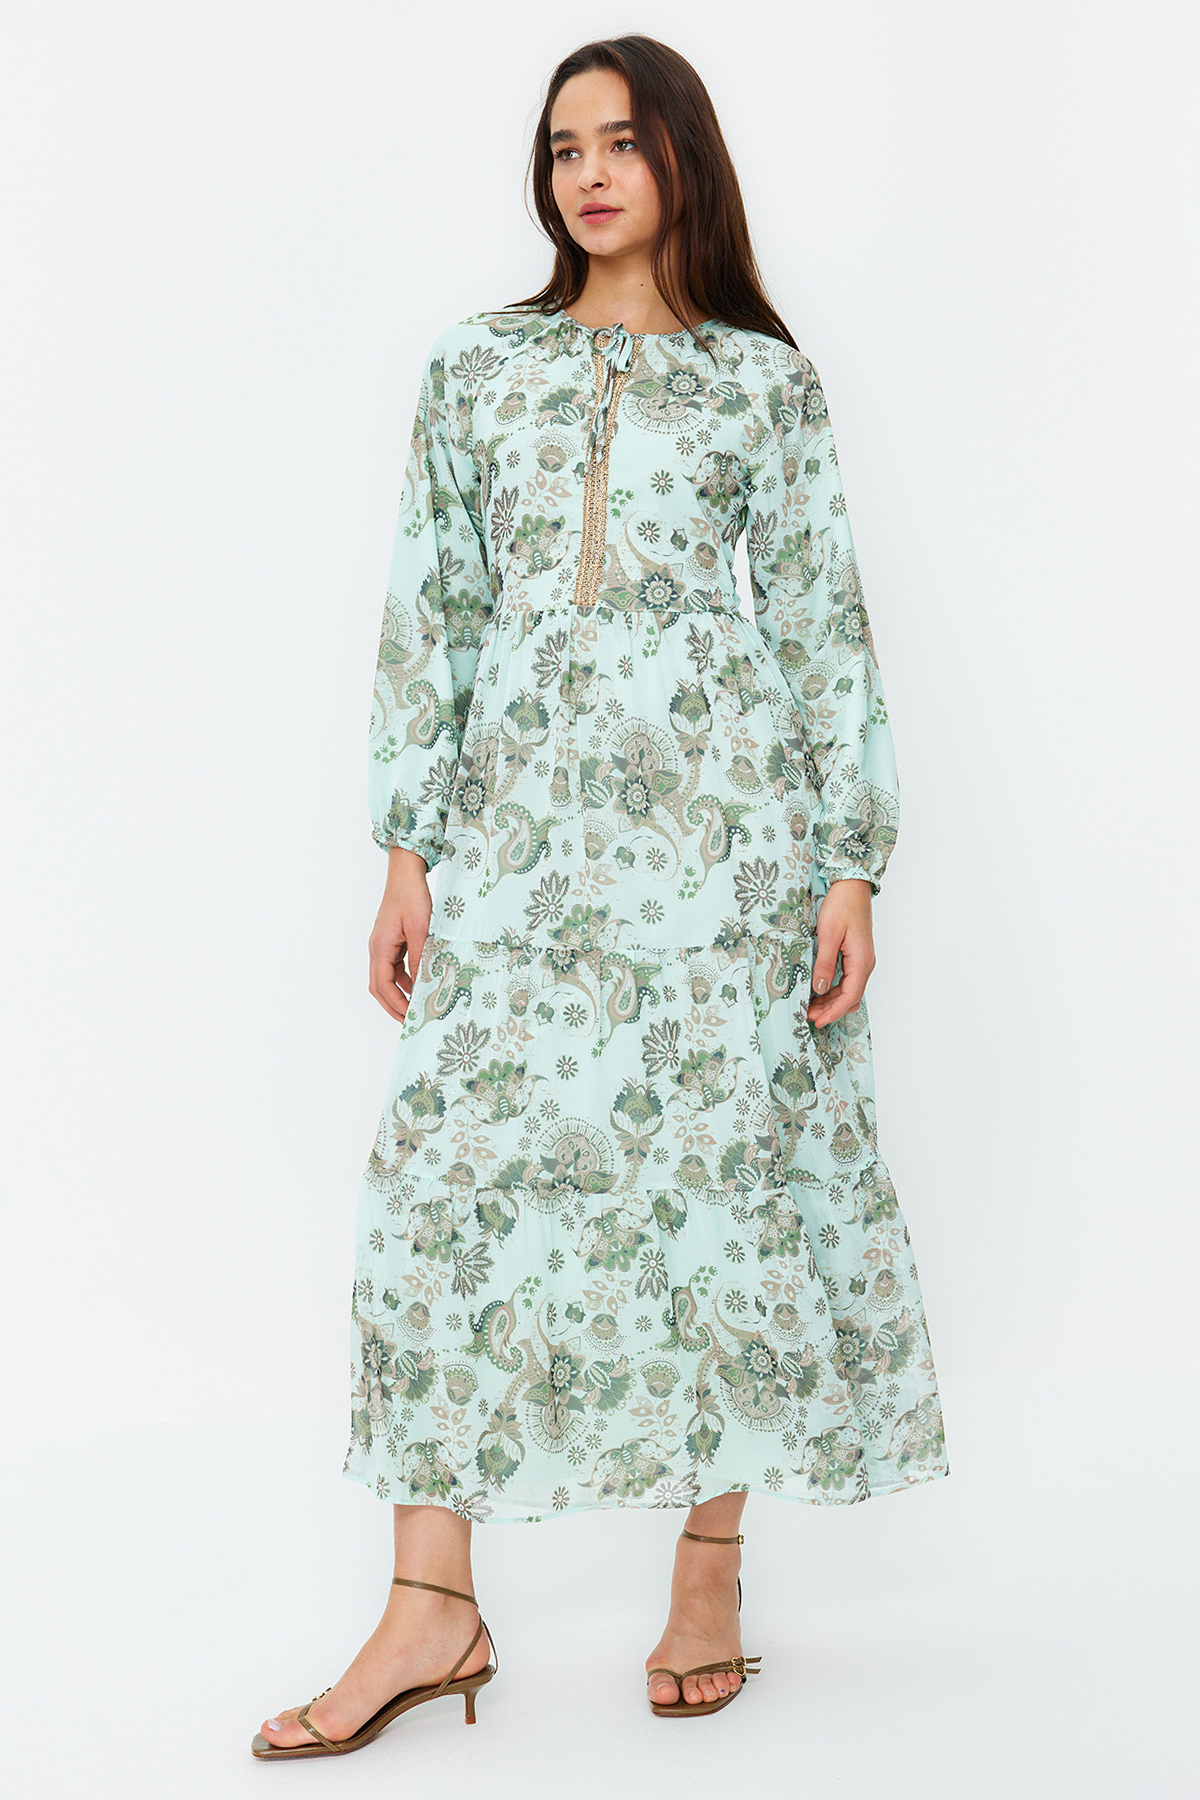 Шифоновое платье с цветочным принтом на тканой подкладке цвета зеленого золота Trendyol Modest, зеленый